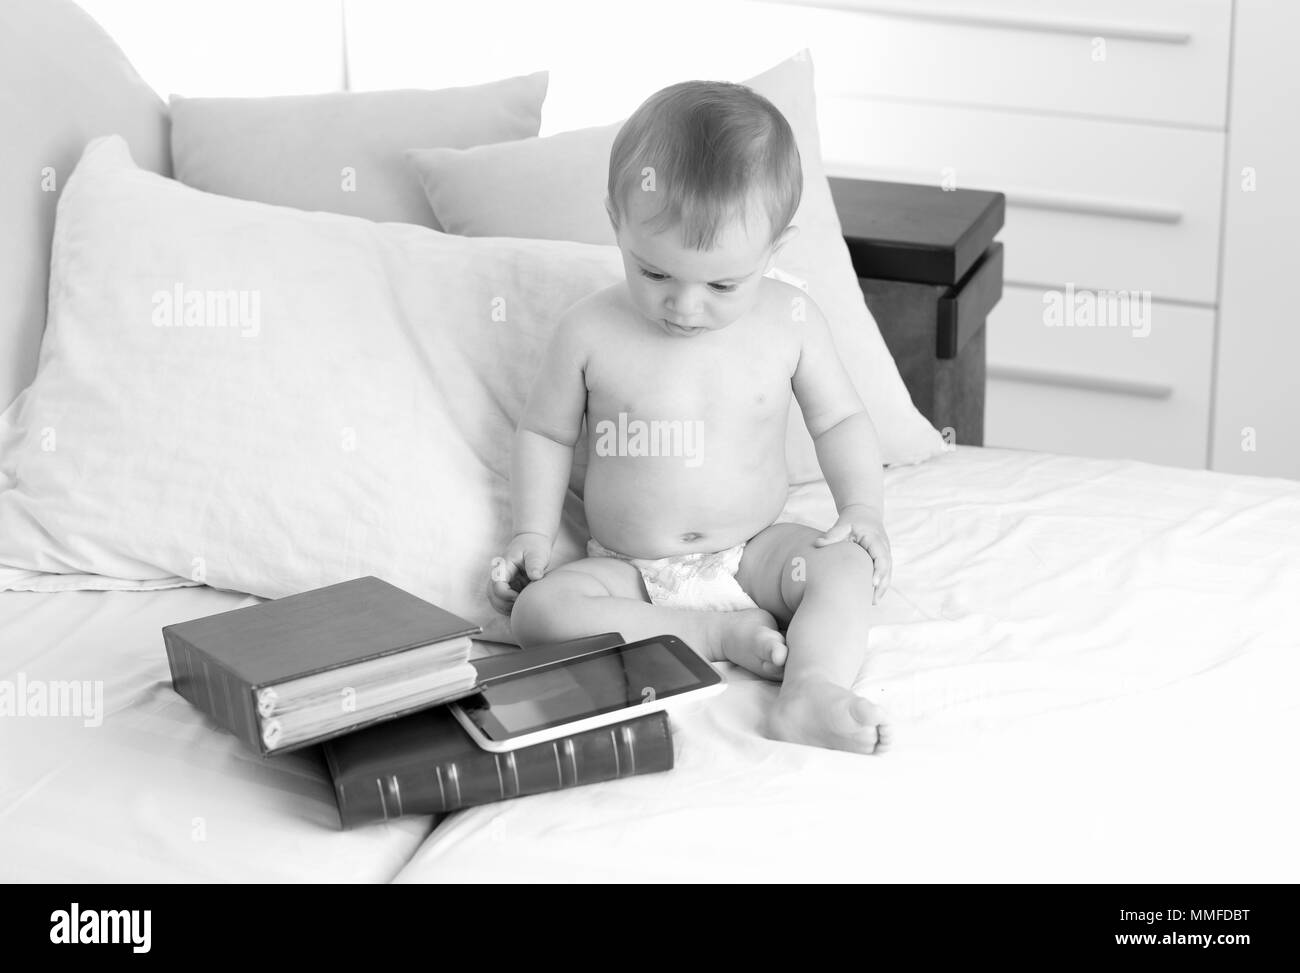 Schwarz-weiß Bild von adorable Baby in Windeln sitzen auf dem Bett mit großen atck von Büchern und digitalen Tablet. Konzept des smart kids und frühe Bildung mit dem Einsatz moderner Technologien und Computer Stockfoto